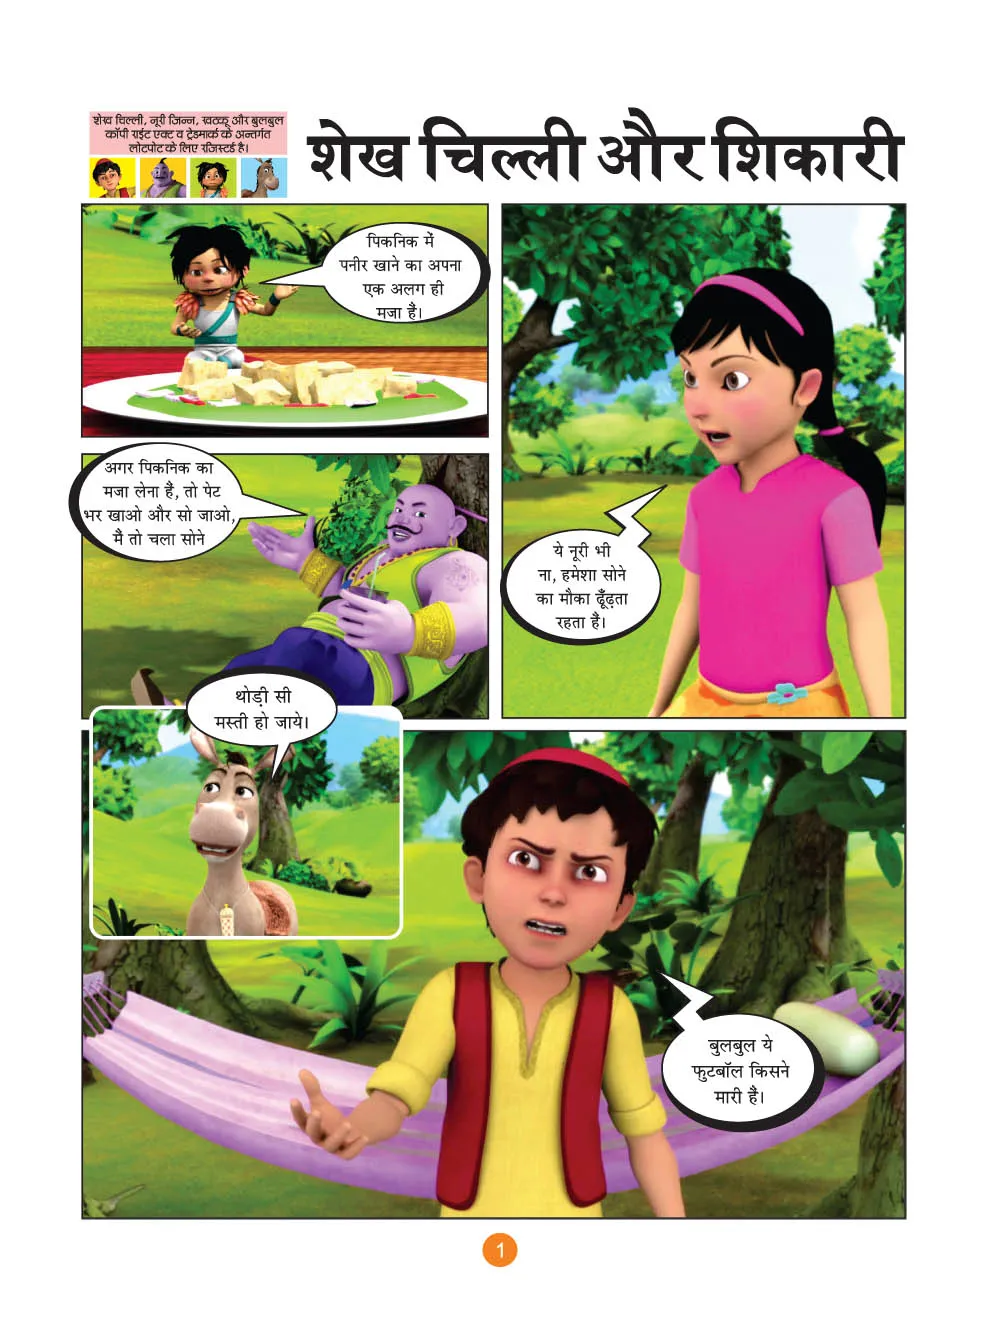 शेख चिल्ली की कॉमिक्स- शिकारी (Sheikh Chilli Comic Hindi)